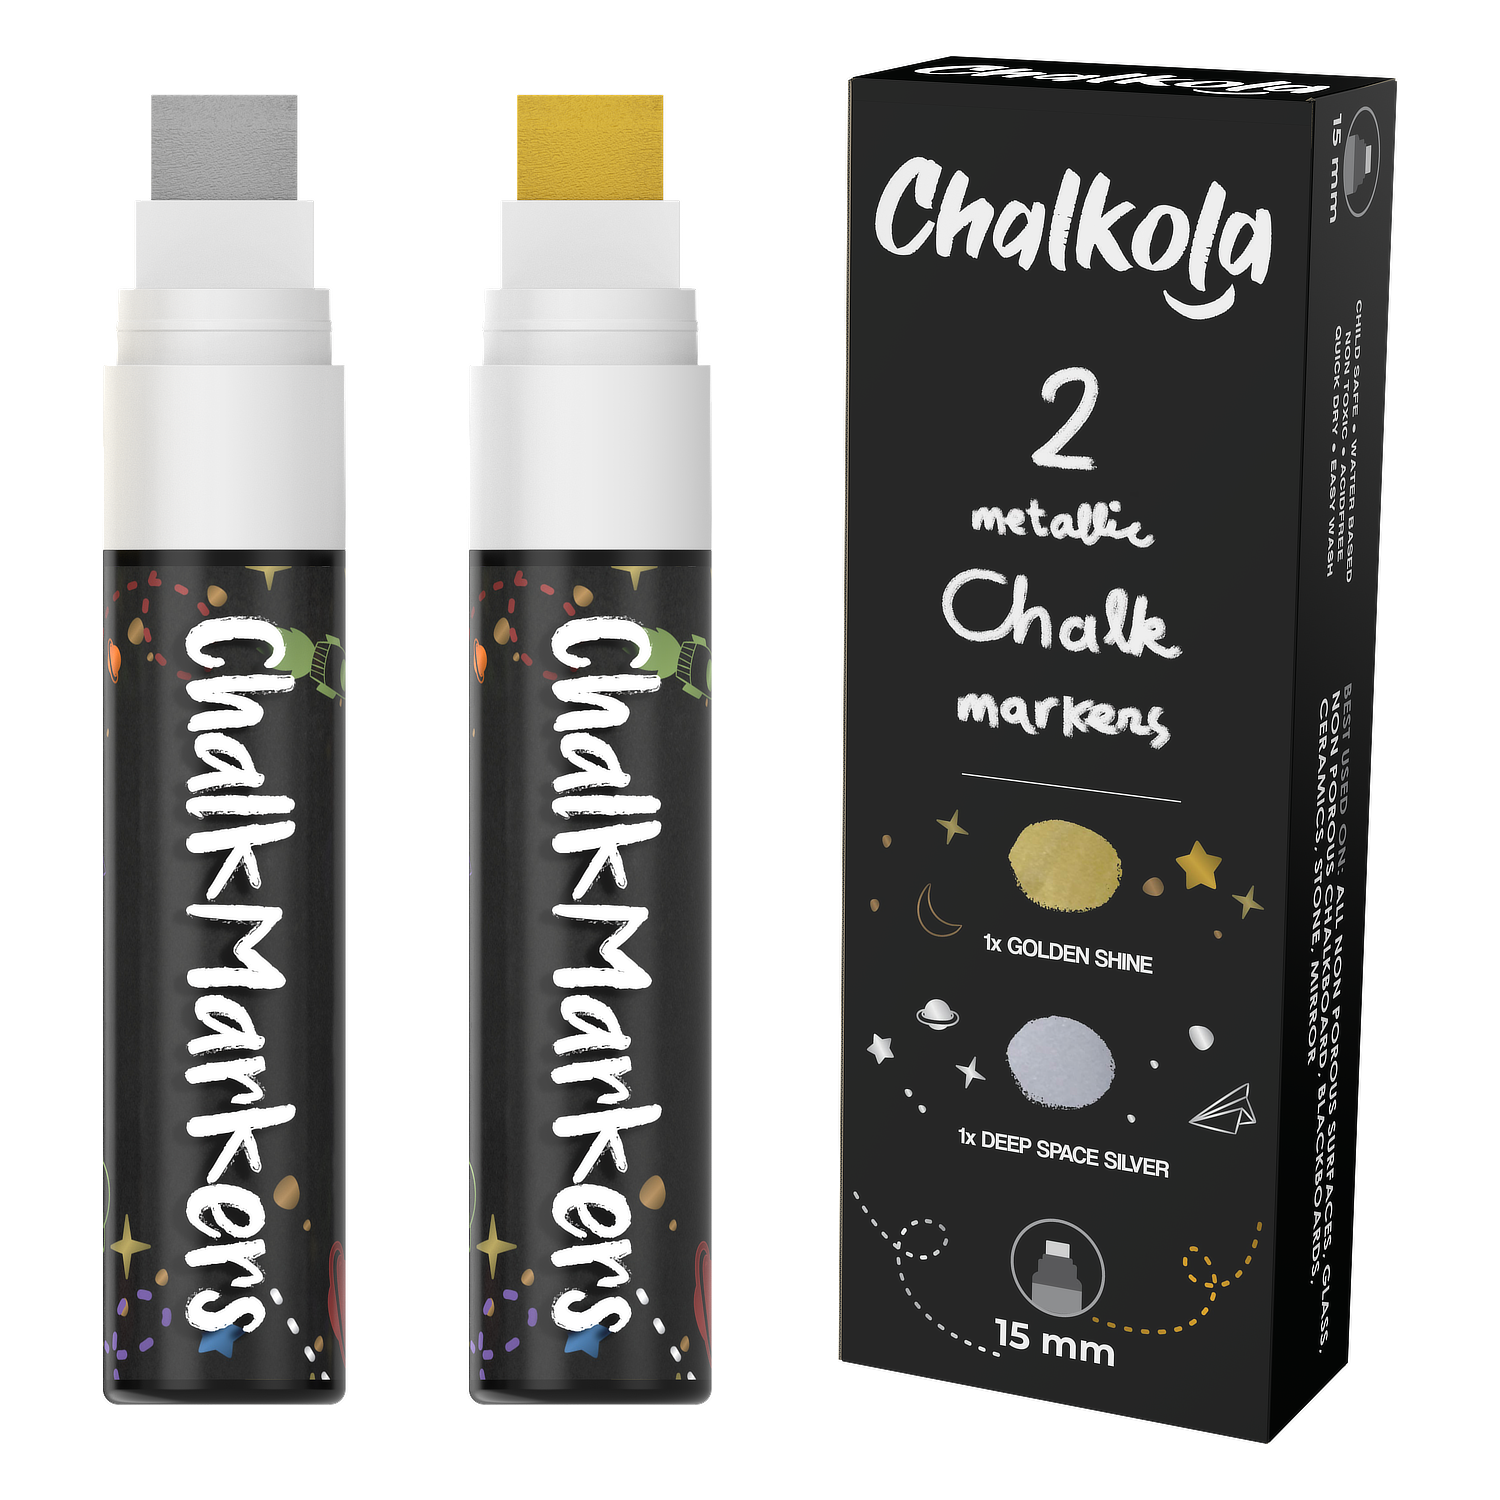 Chalkola 1 Extra Fine Tip Chalk Markers - Pack Of 40 (Neon, Classic  Metallic) Chalk Pens - For Chalkboard, Blackboard, Window, Labels, Bi